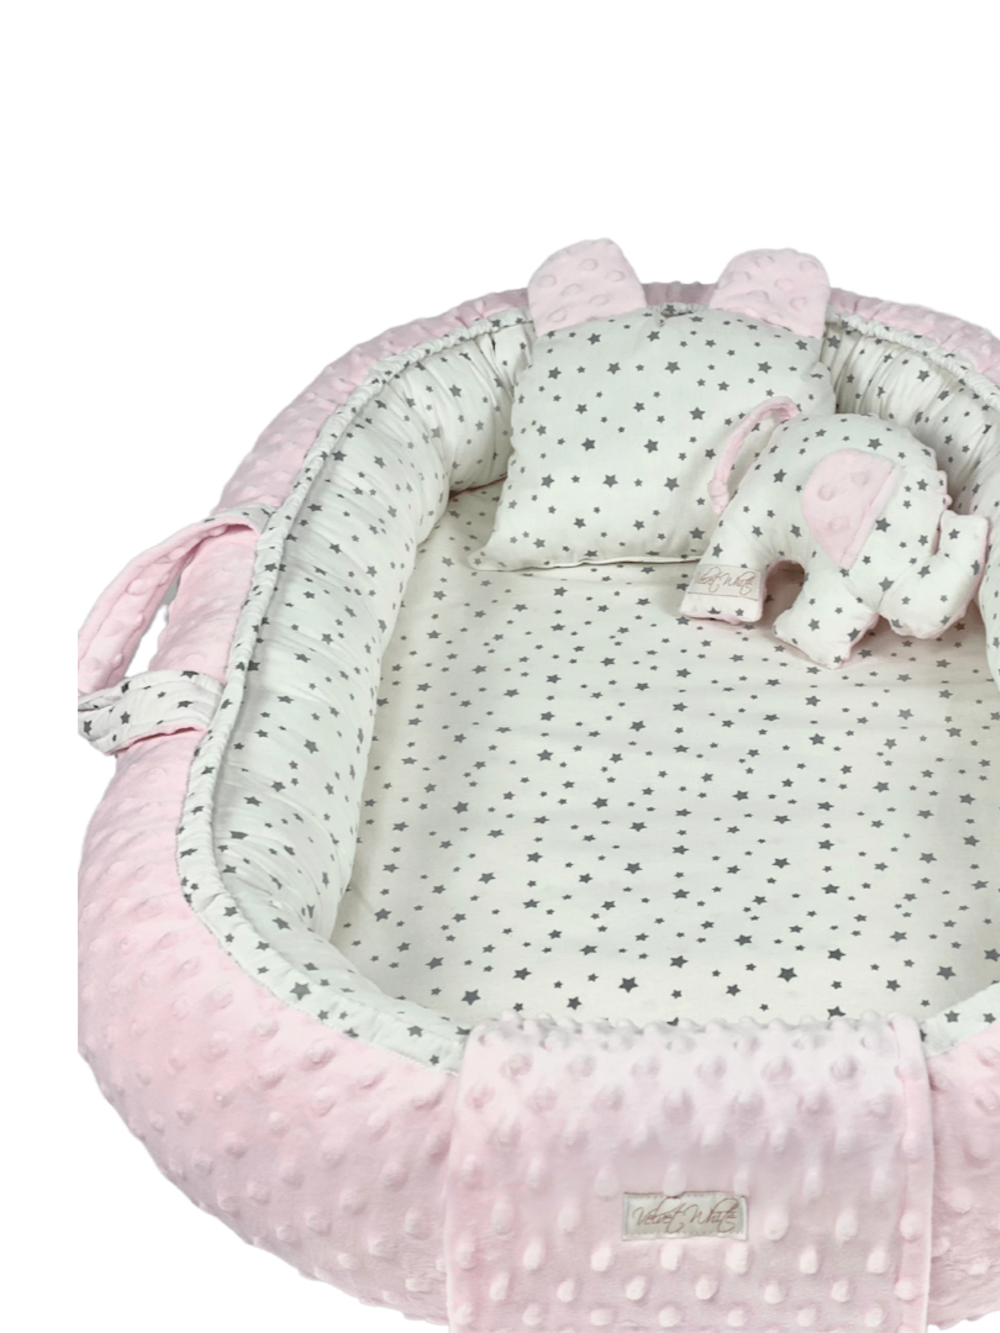 Παιδική Φωλιά - Baby Nest Pink Stars